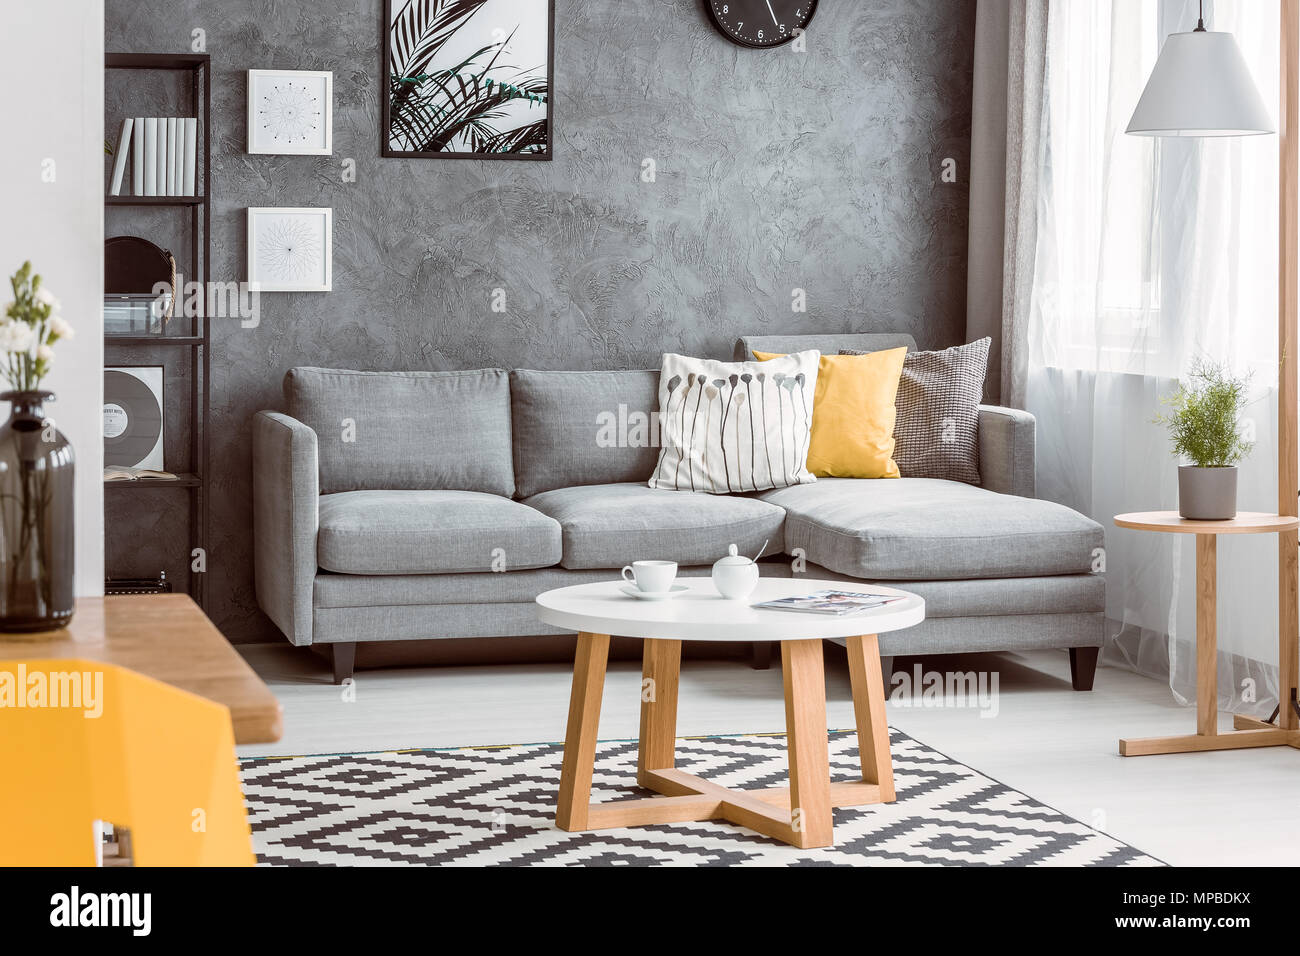 Table basse en bois sur le tapis noir et blanc dans la salle de séjour avec  canapé gris jaune sur l'oreiller Photo Stock - Alamy